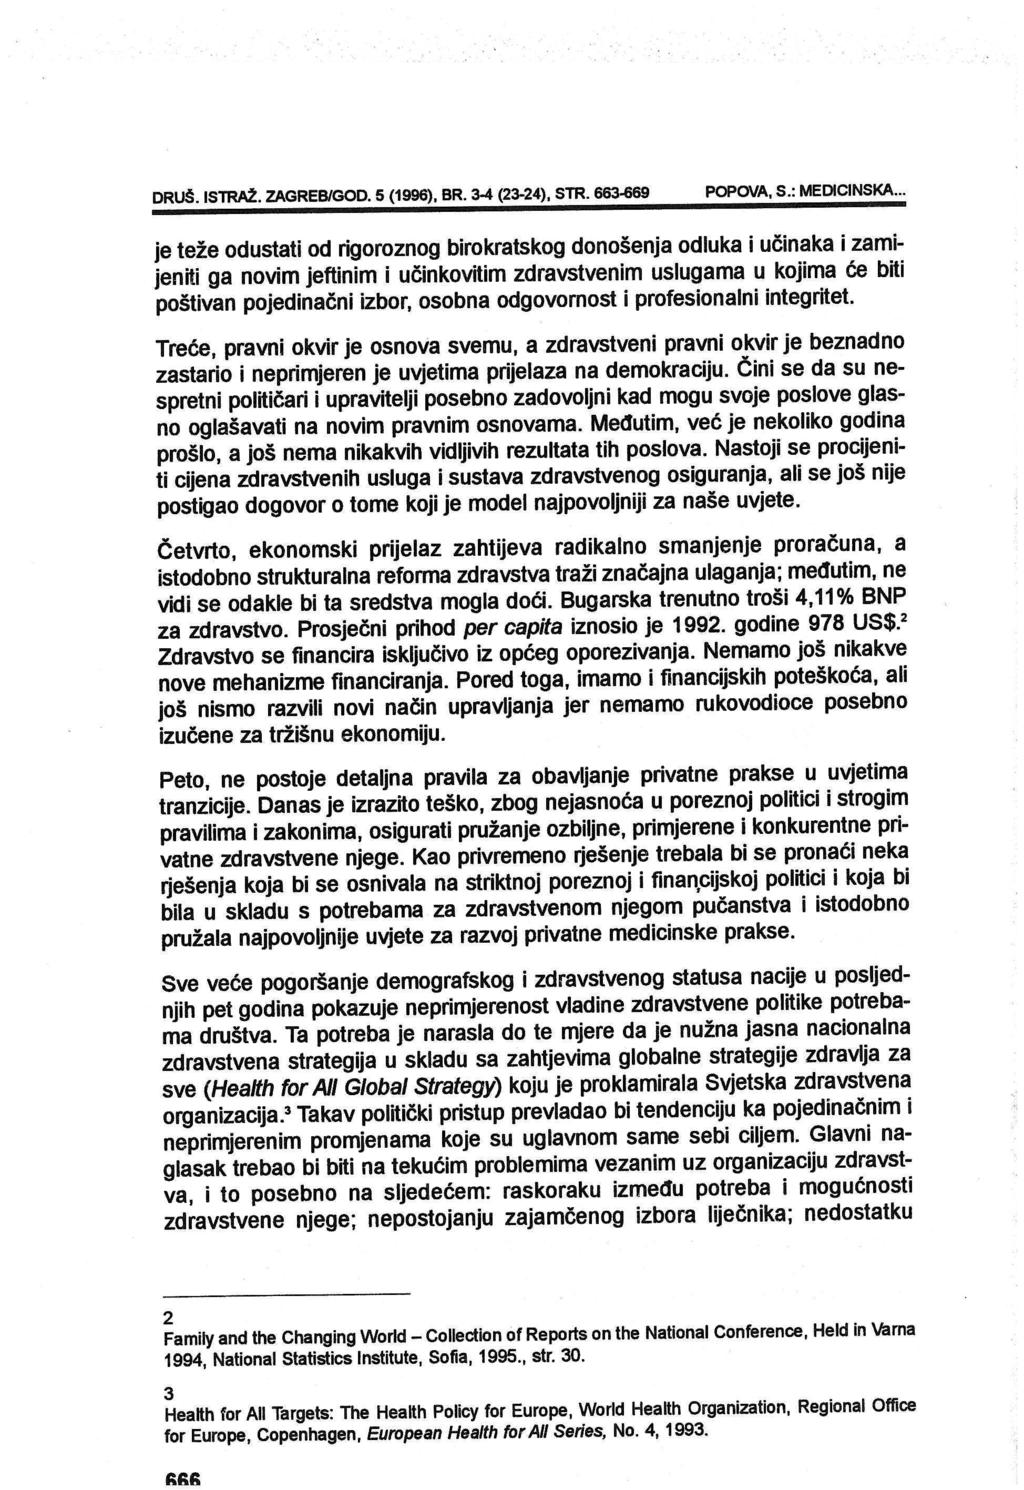 DRU~. ISTRAŽ. ZAGREB/GOD. 5 (1996), BR. 3-4 (23-24), STR. 663-669 POPOVA, S.: MEDICINSKA.